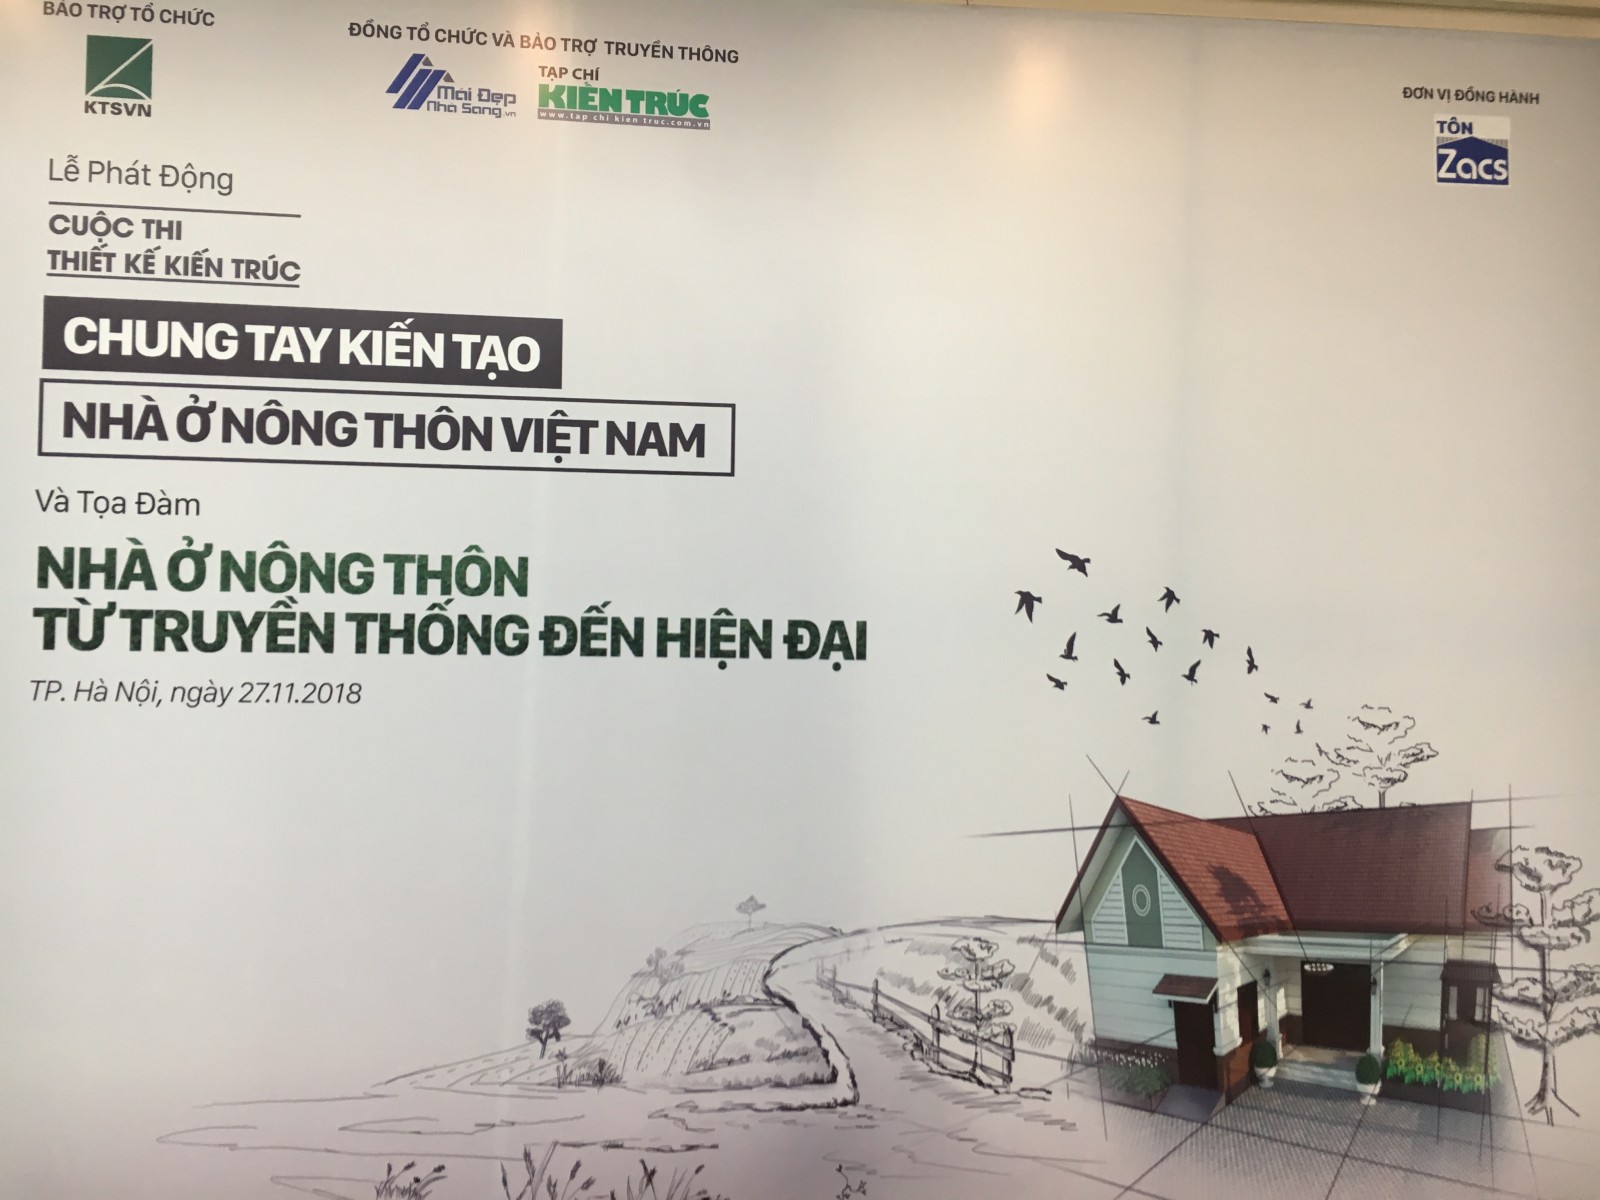 Cuộc thi thiết kế kiến trúc với chủ đề “Chung tay Kiến tạo nhà ở nông thôn Việt Nam” nhằm nghiên cứu, thiết kế, tìm ra những kiến trúc phù hợp cho vùng nông thôn.